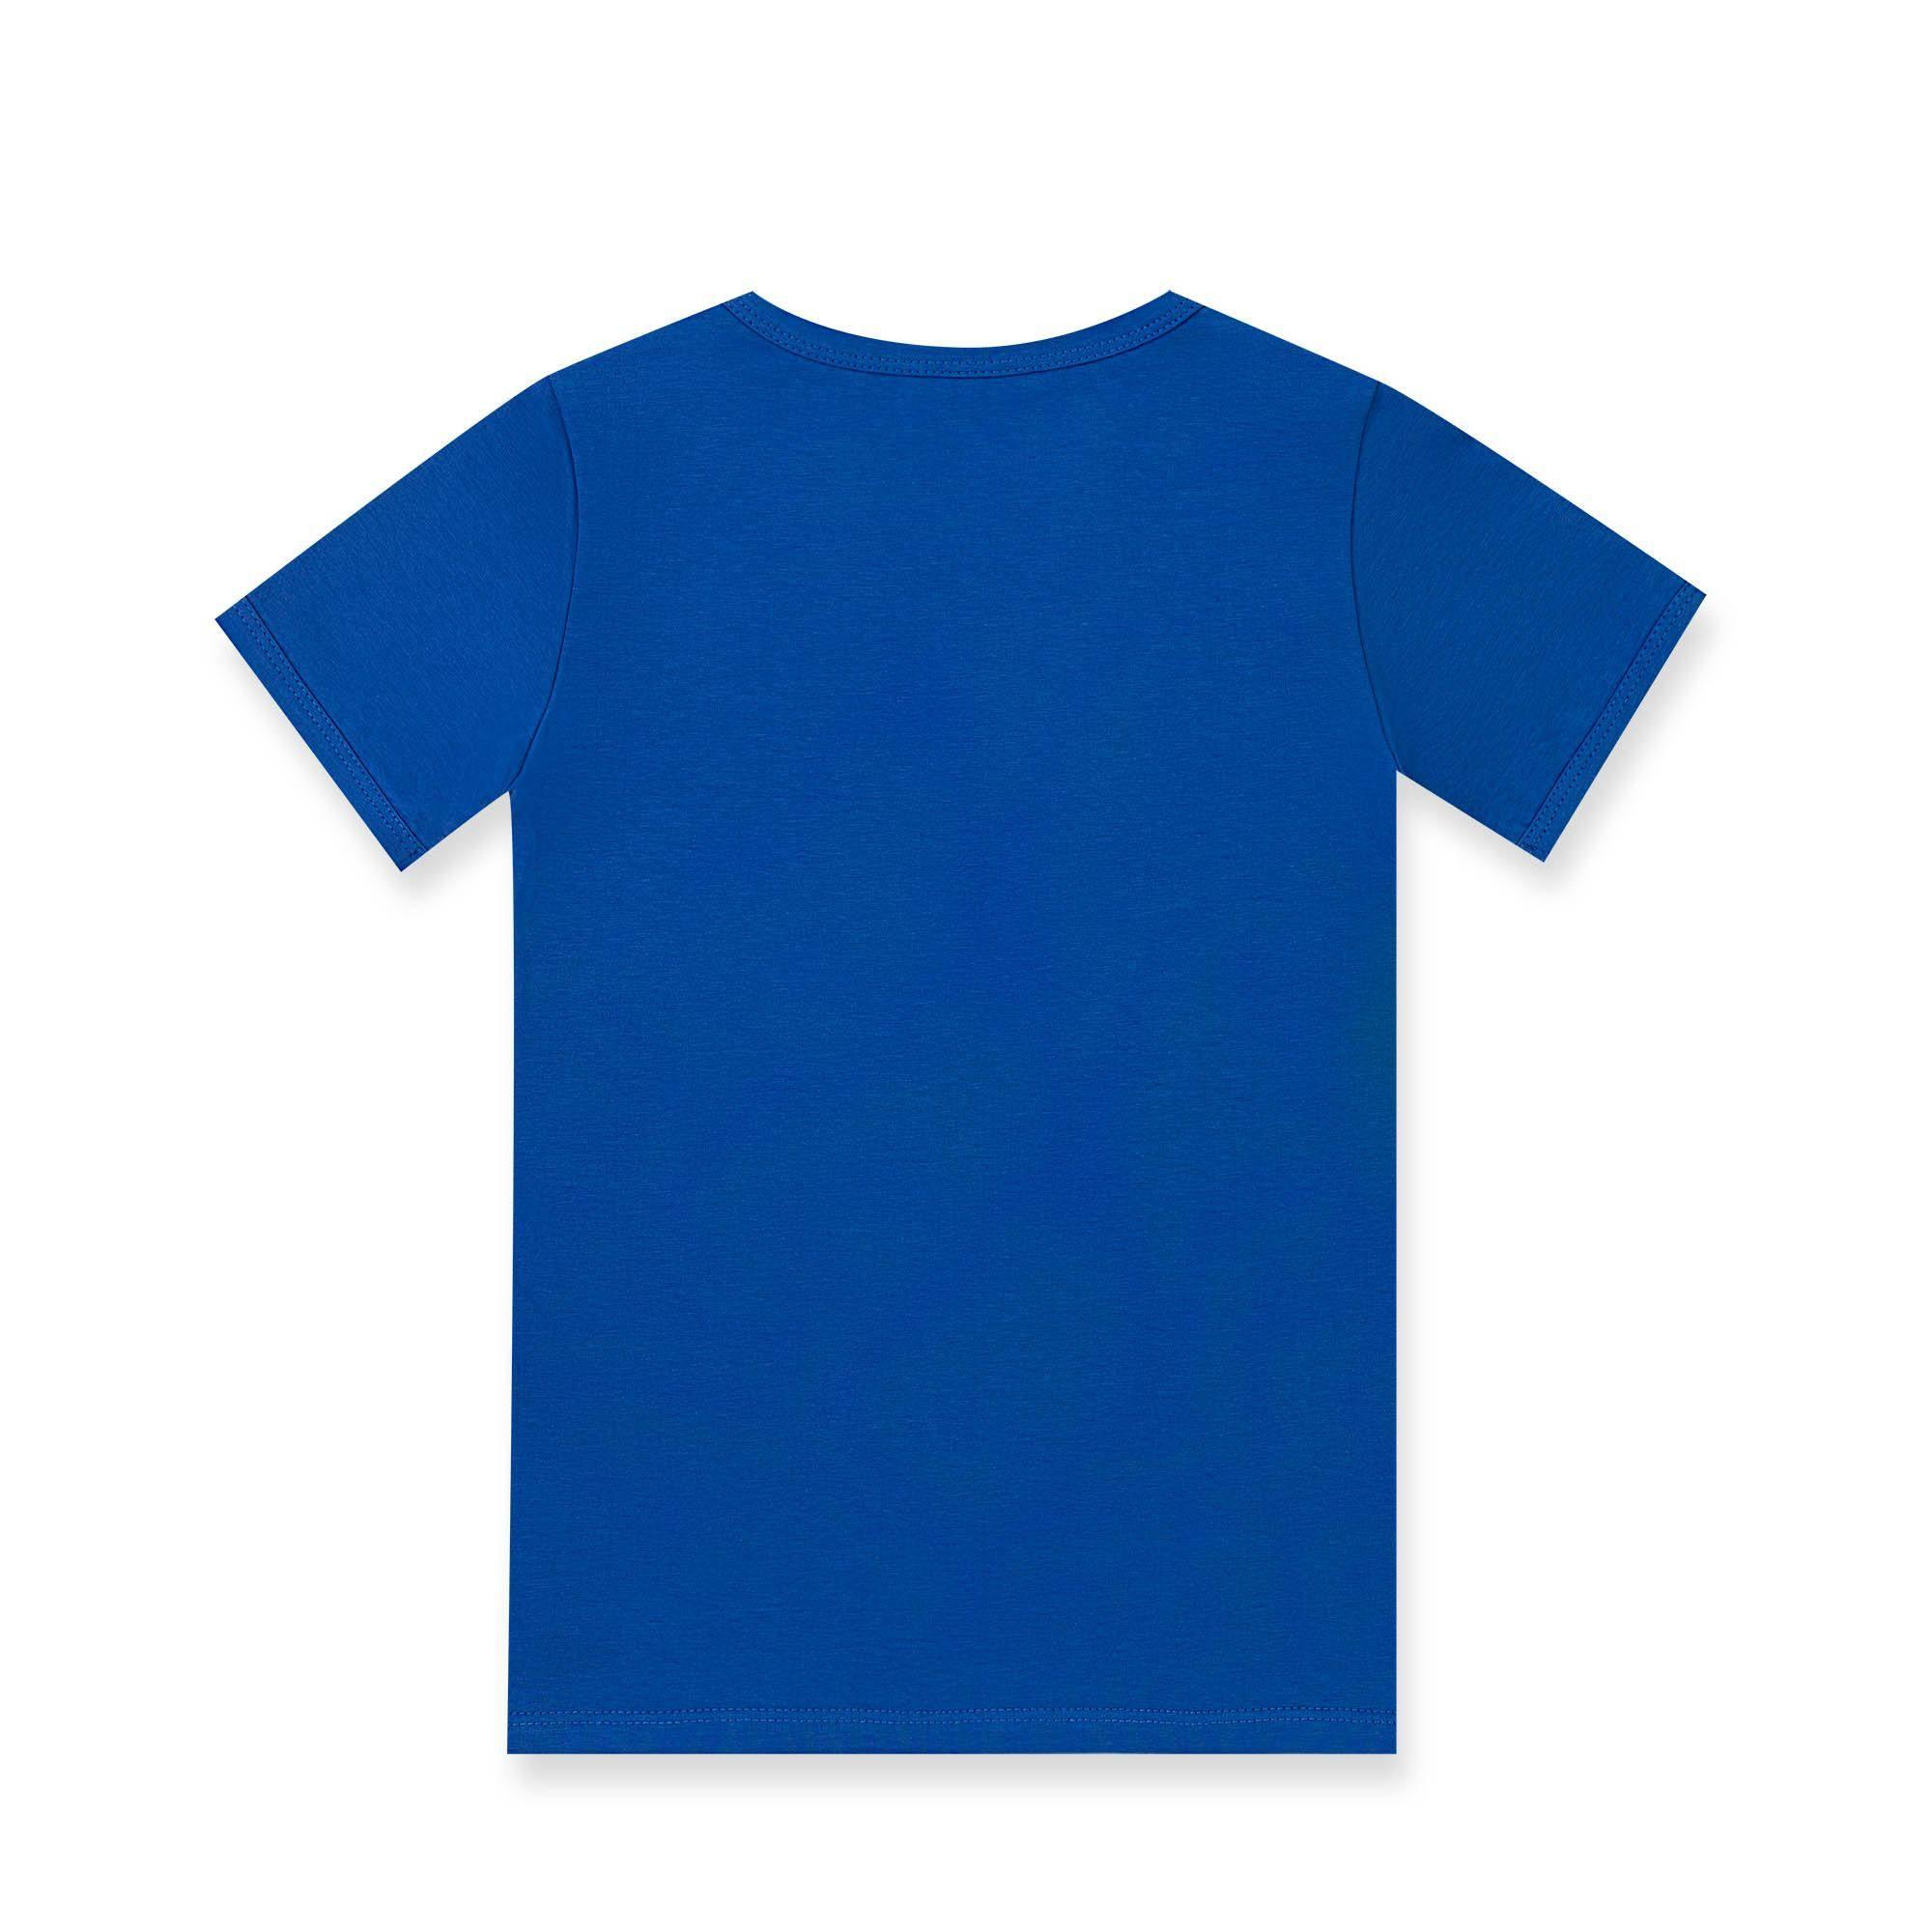 Błękitno-niebieska koszulka dwukolorowa niemowlęca